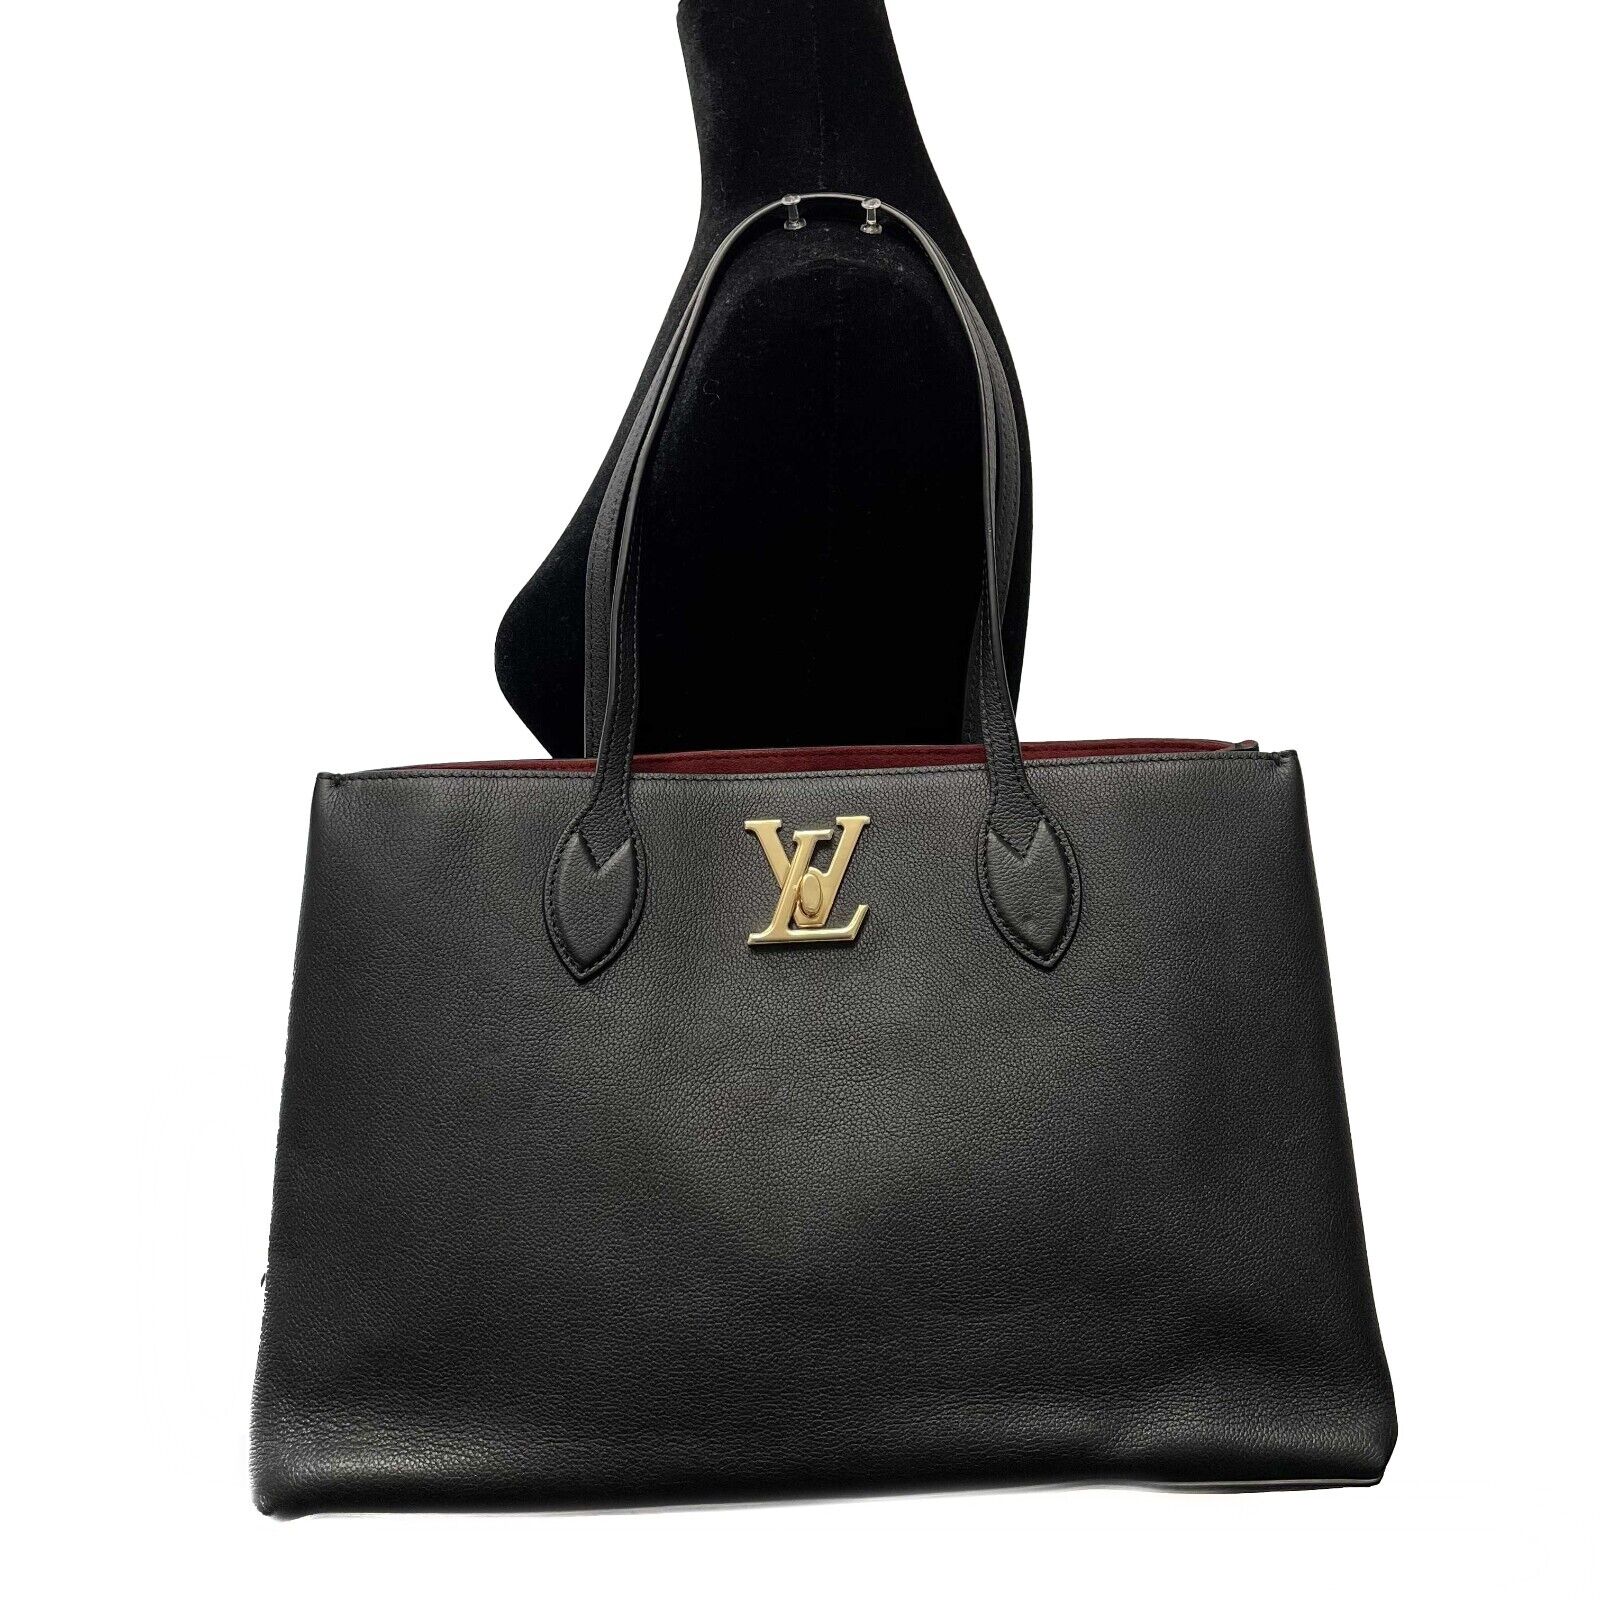 LOUIS VUITTON - NEW LV Lockme Shopper - Black Leather Shoulder Bag / T